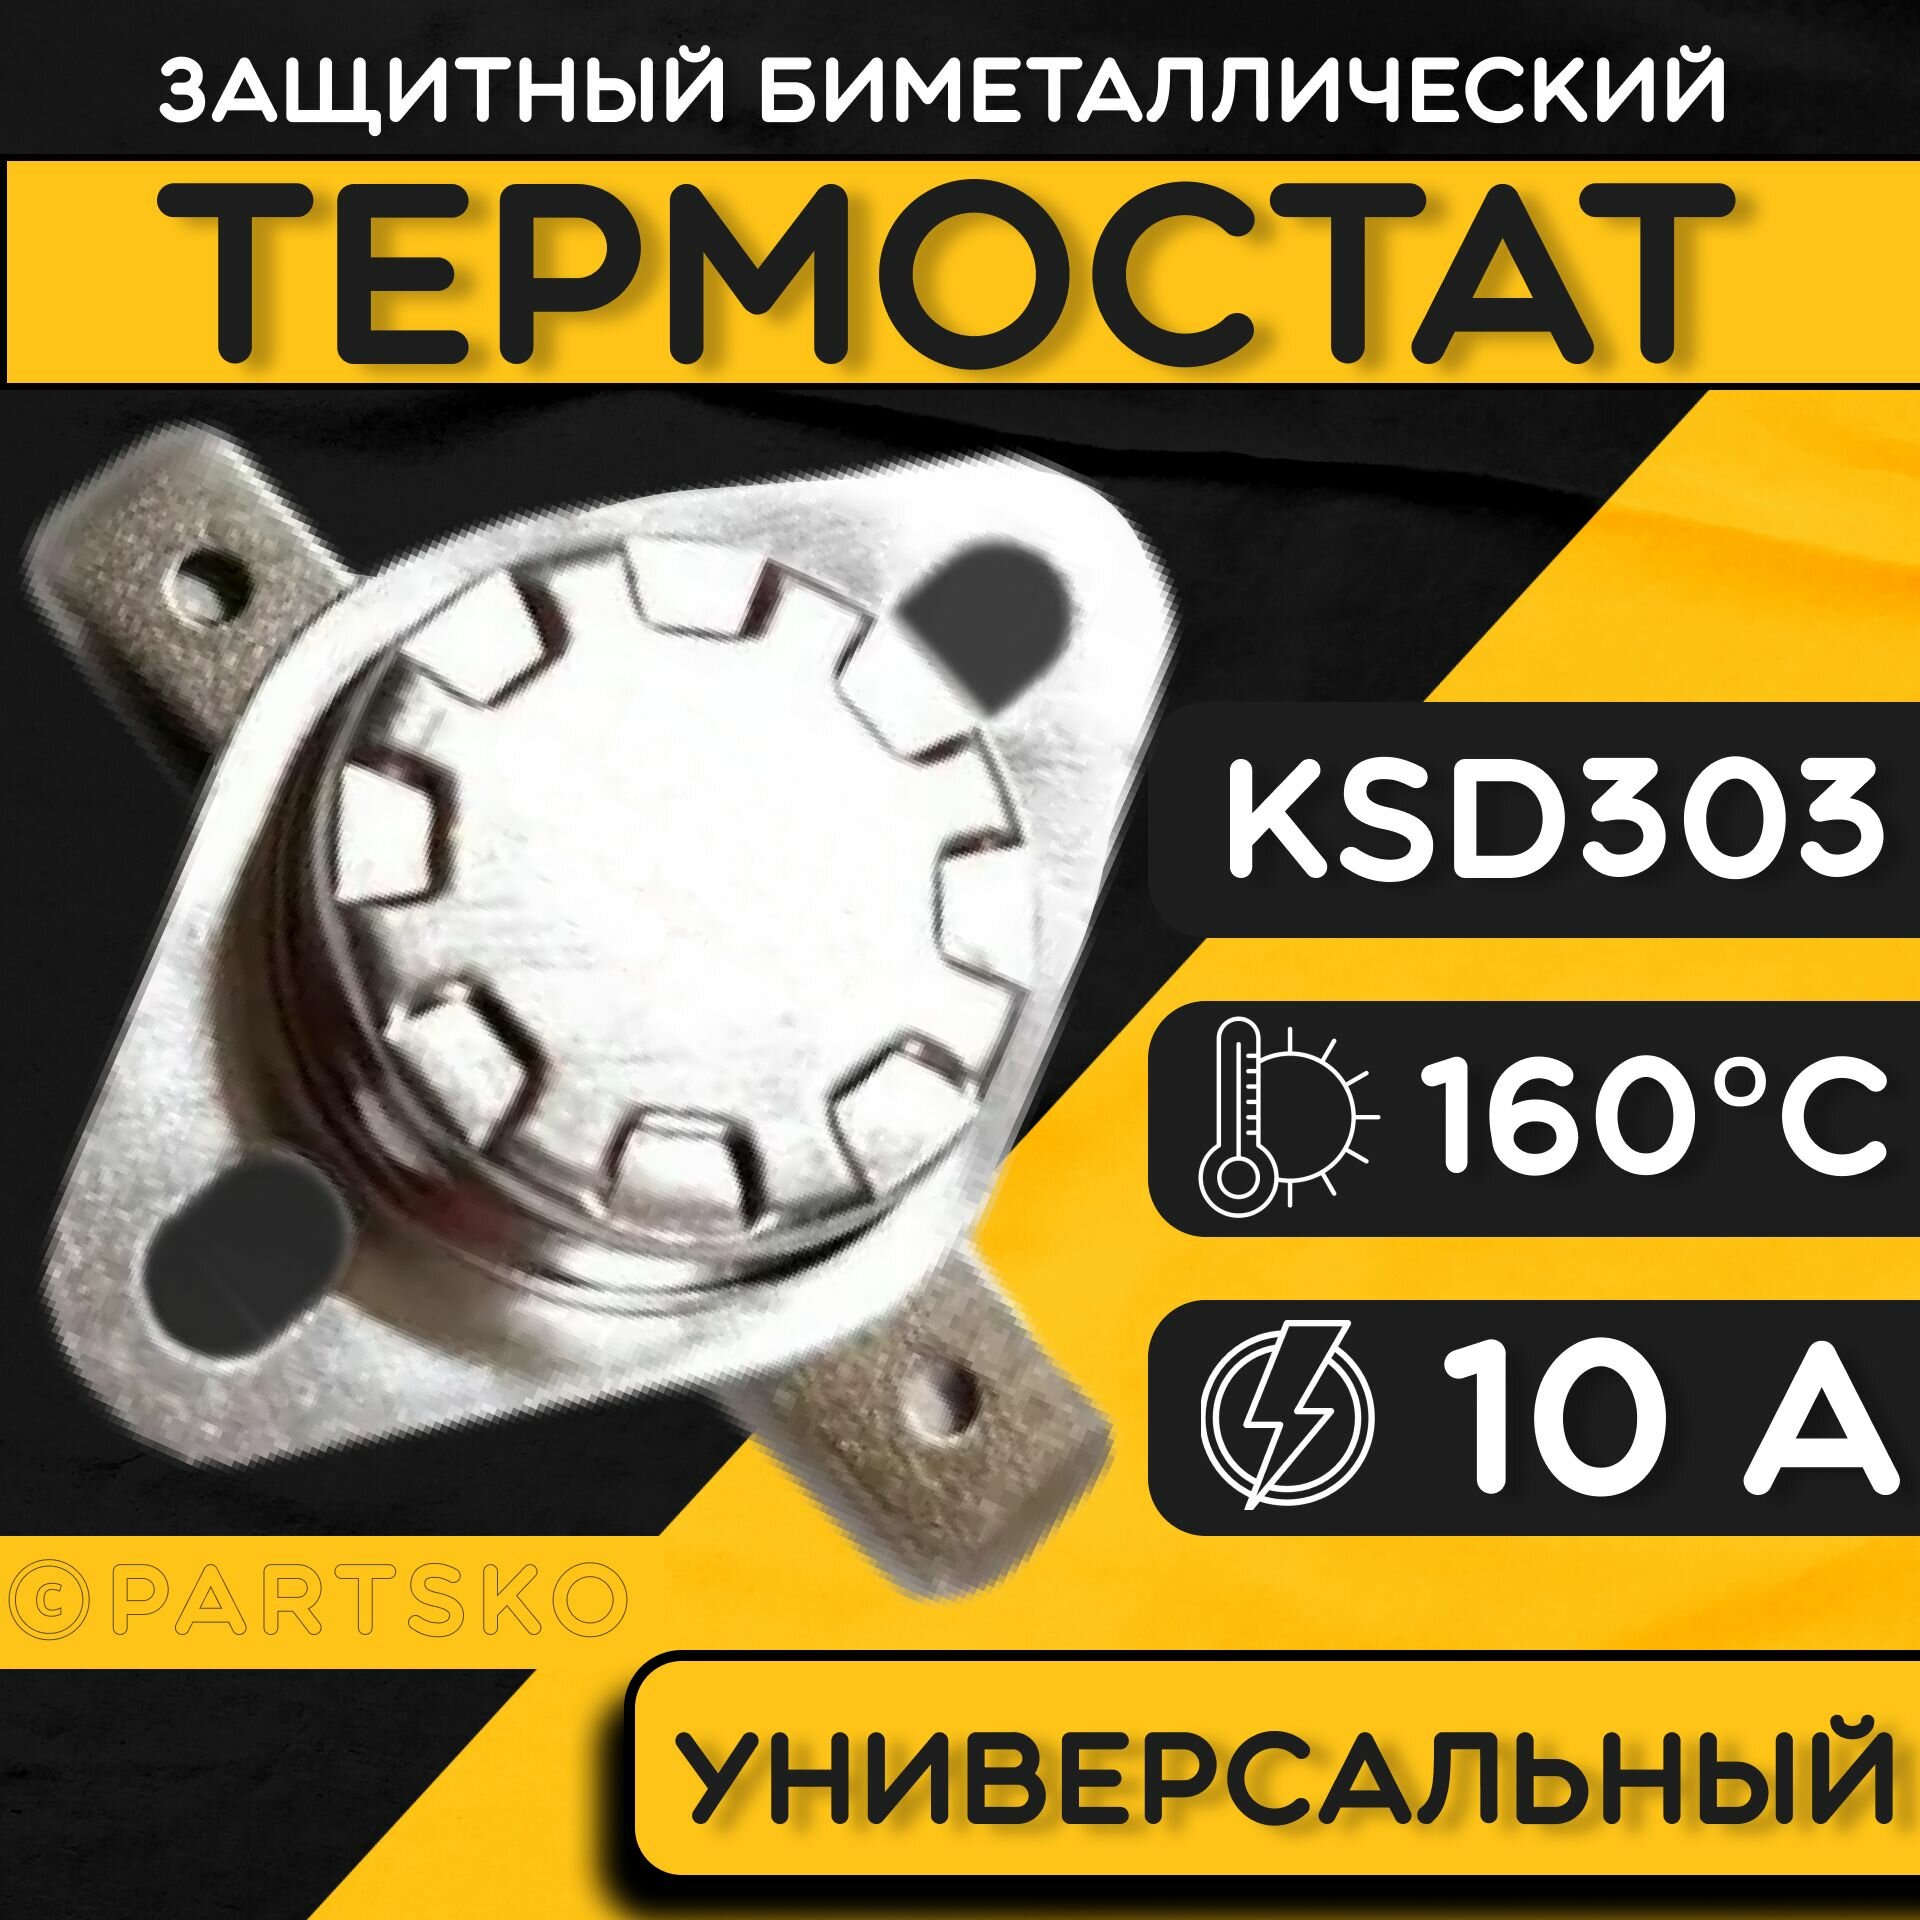 Термостат для водонагревателя биметаллический KSD302, 10A, до 160 градусов. Термодатчик / регулятор температуры универсальный, самовозвратный.